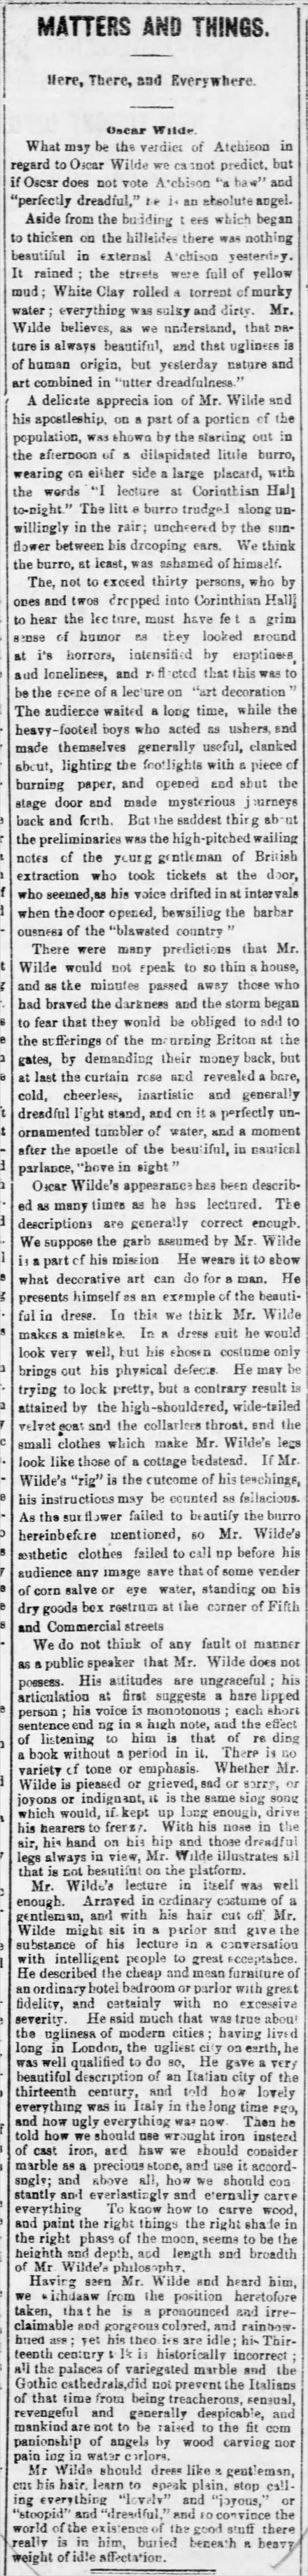 Oscar Wilde ephemera